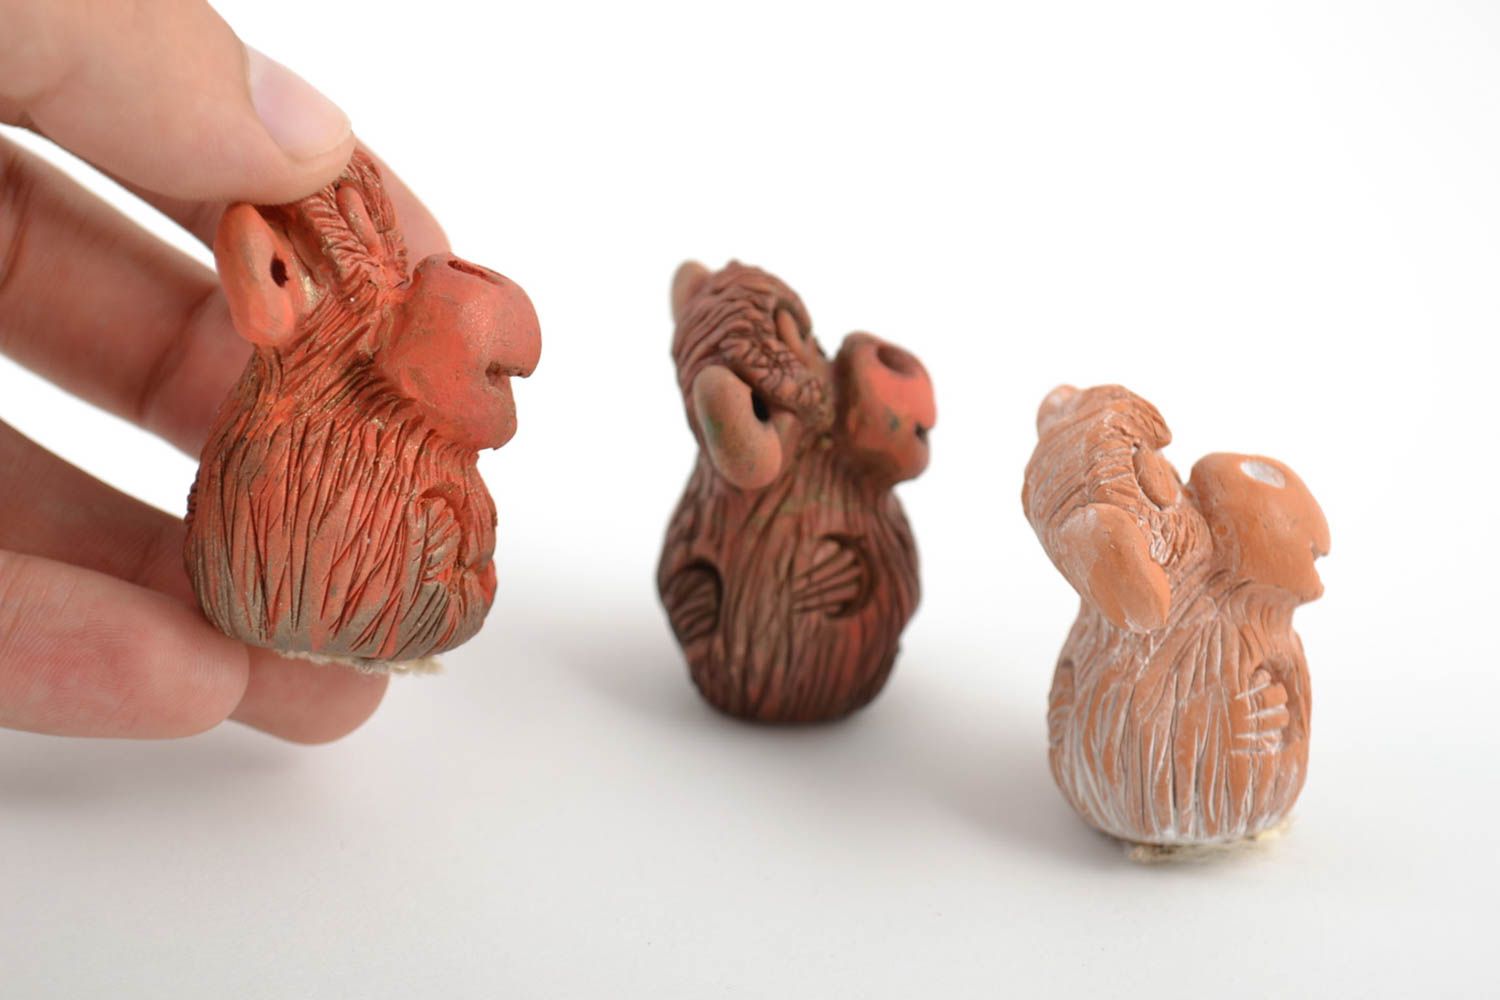 Фигурки из глины обезьянки комплект из трех изделий коричневые милые хэнд мейд фото 2